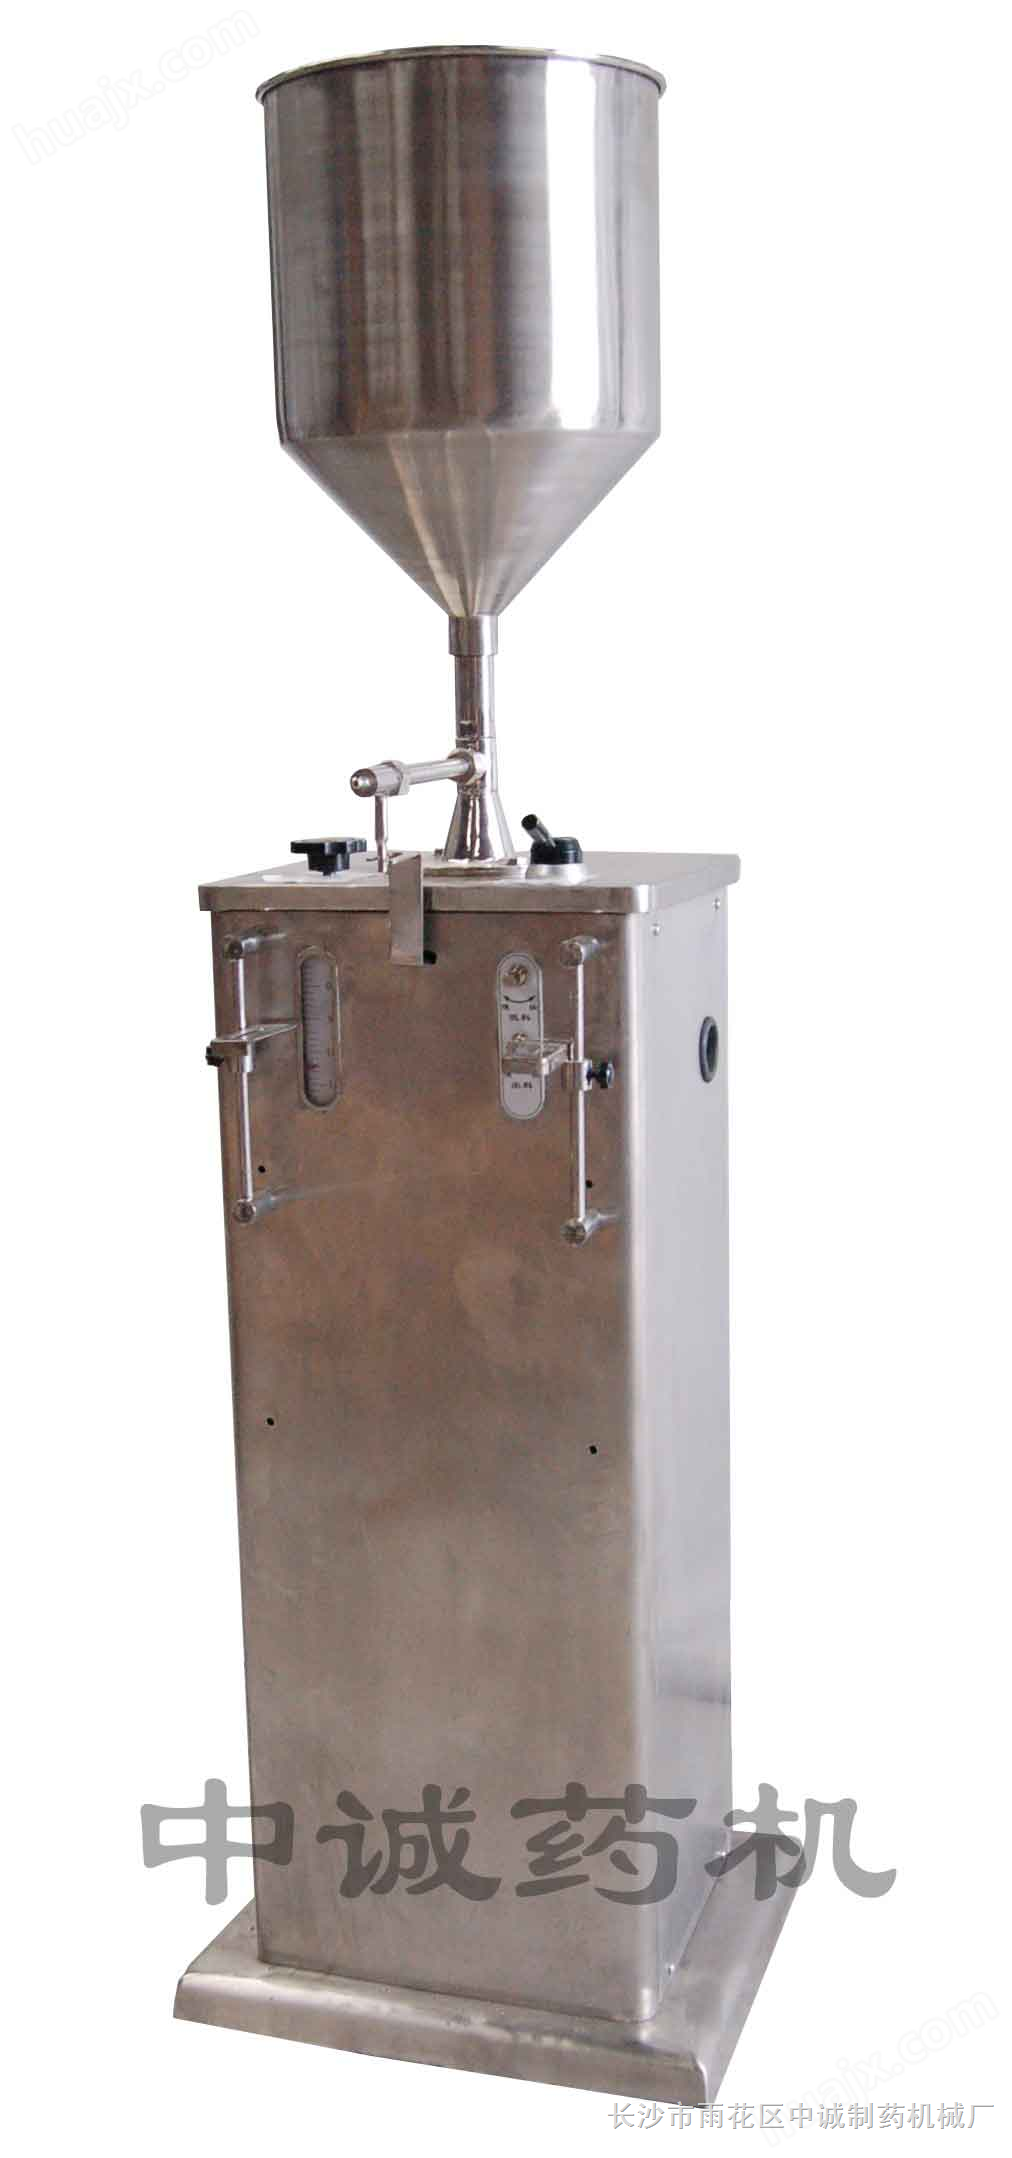 北京电动膏液灌装机,电动膏液灌装机型号